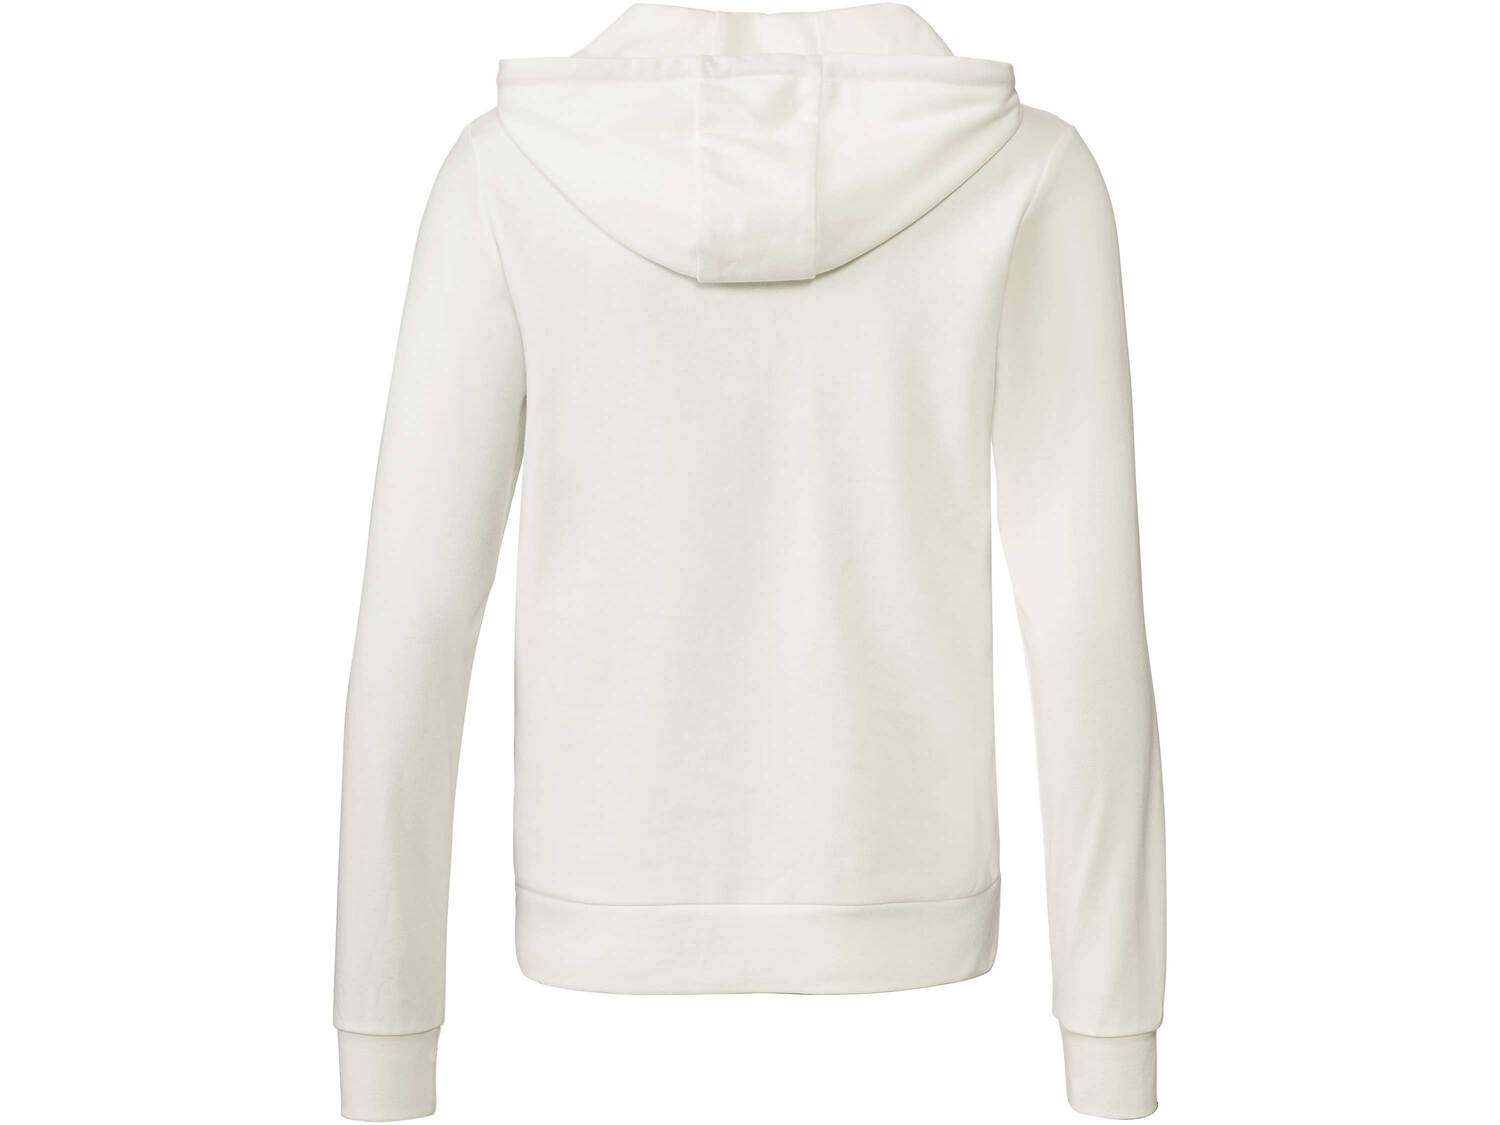 Bluza damska z bawełną Esmara, cena 39,99 PLN 
- rozmiary: XS-L
- wysoka zawartość ...